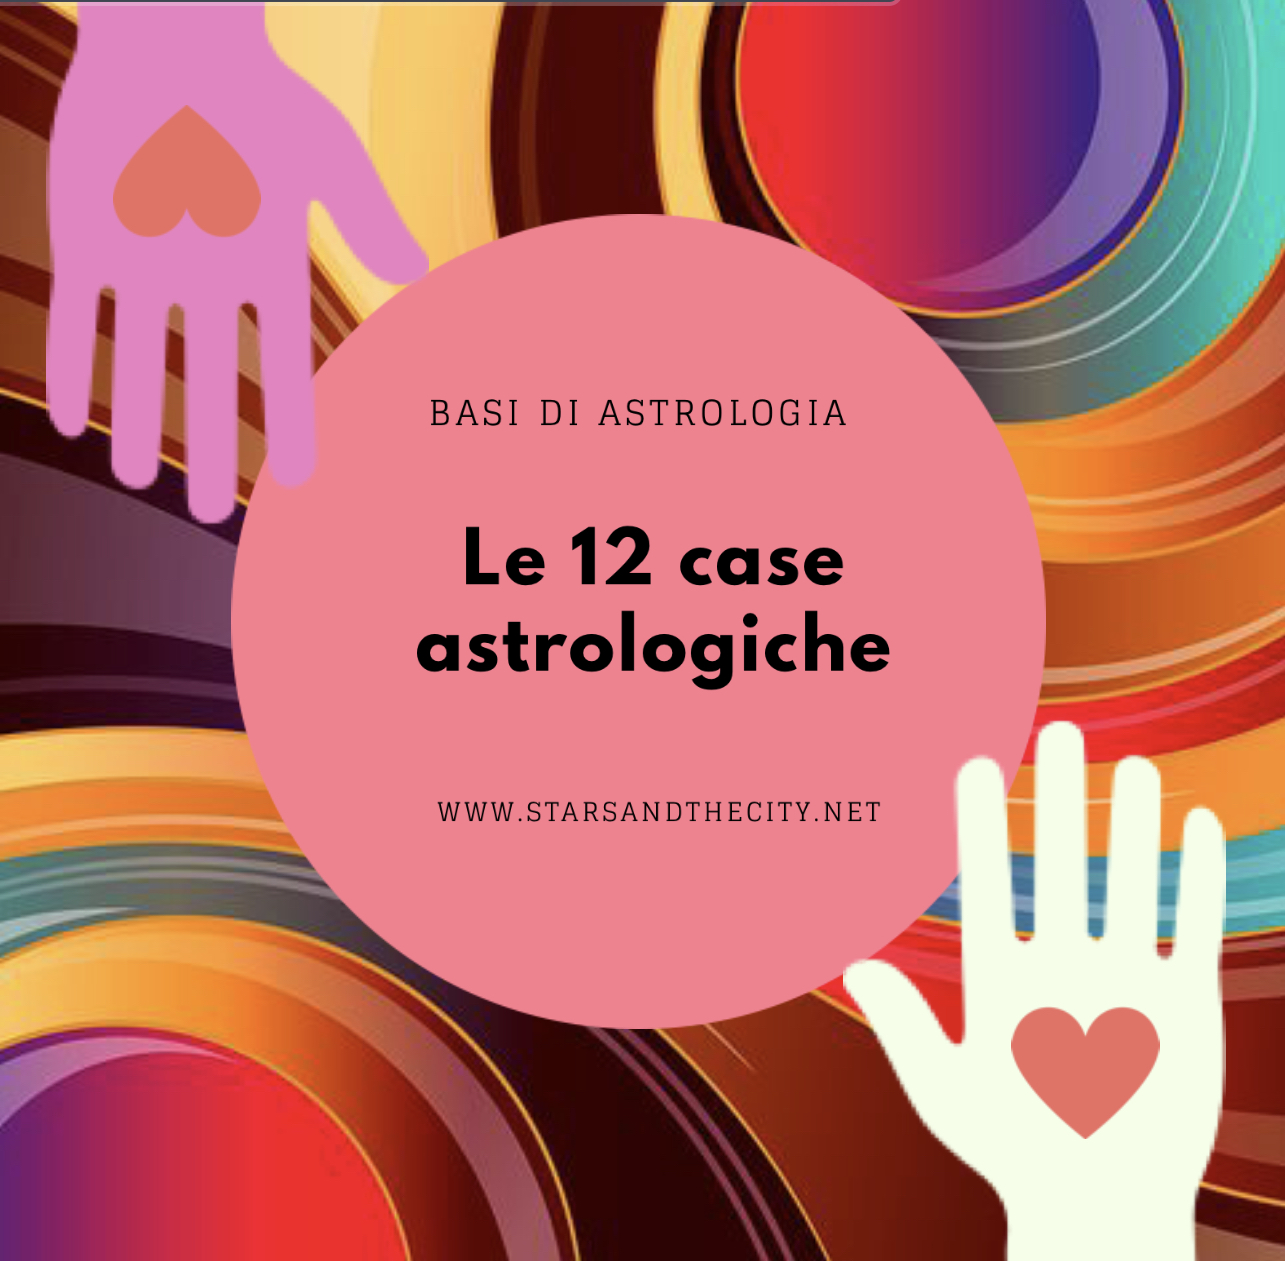 Le12caseastrologiche, le 12 case astrologiche, Lia bucci, starsandthecity